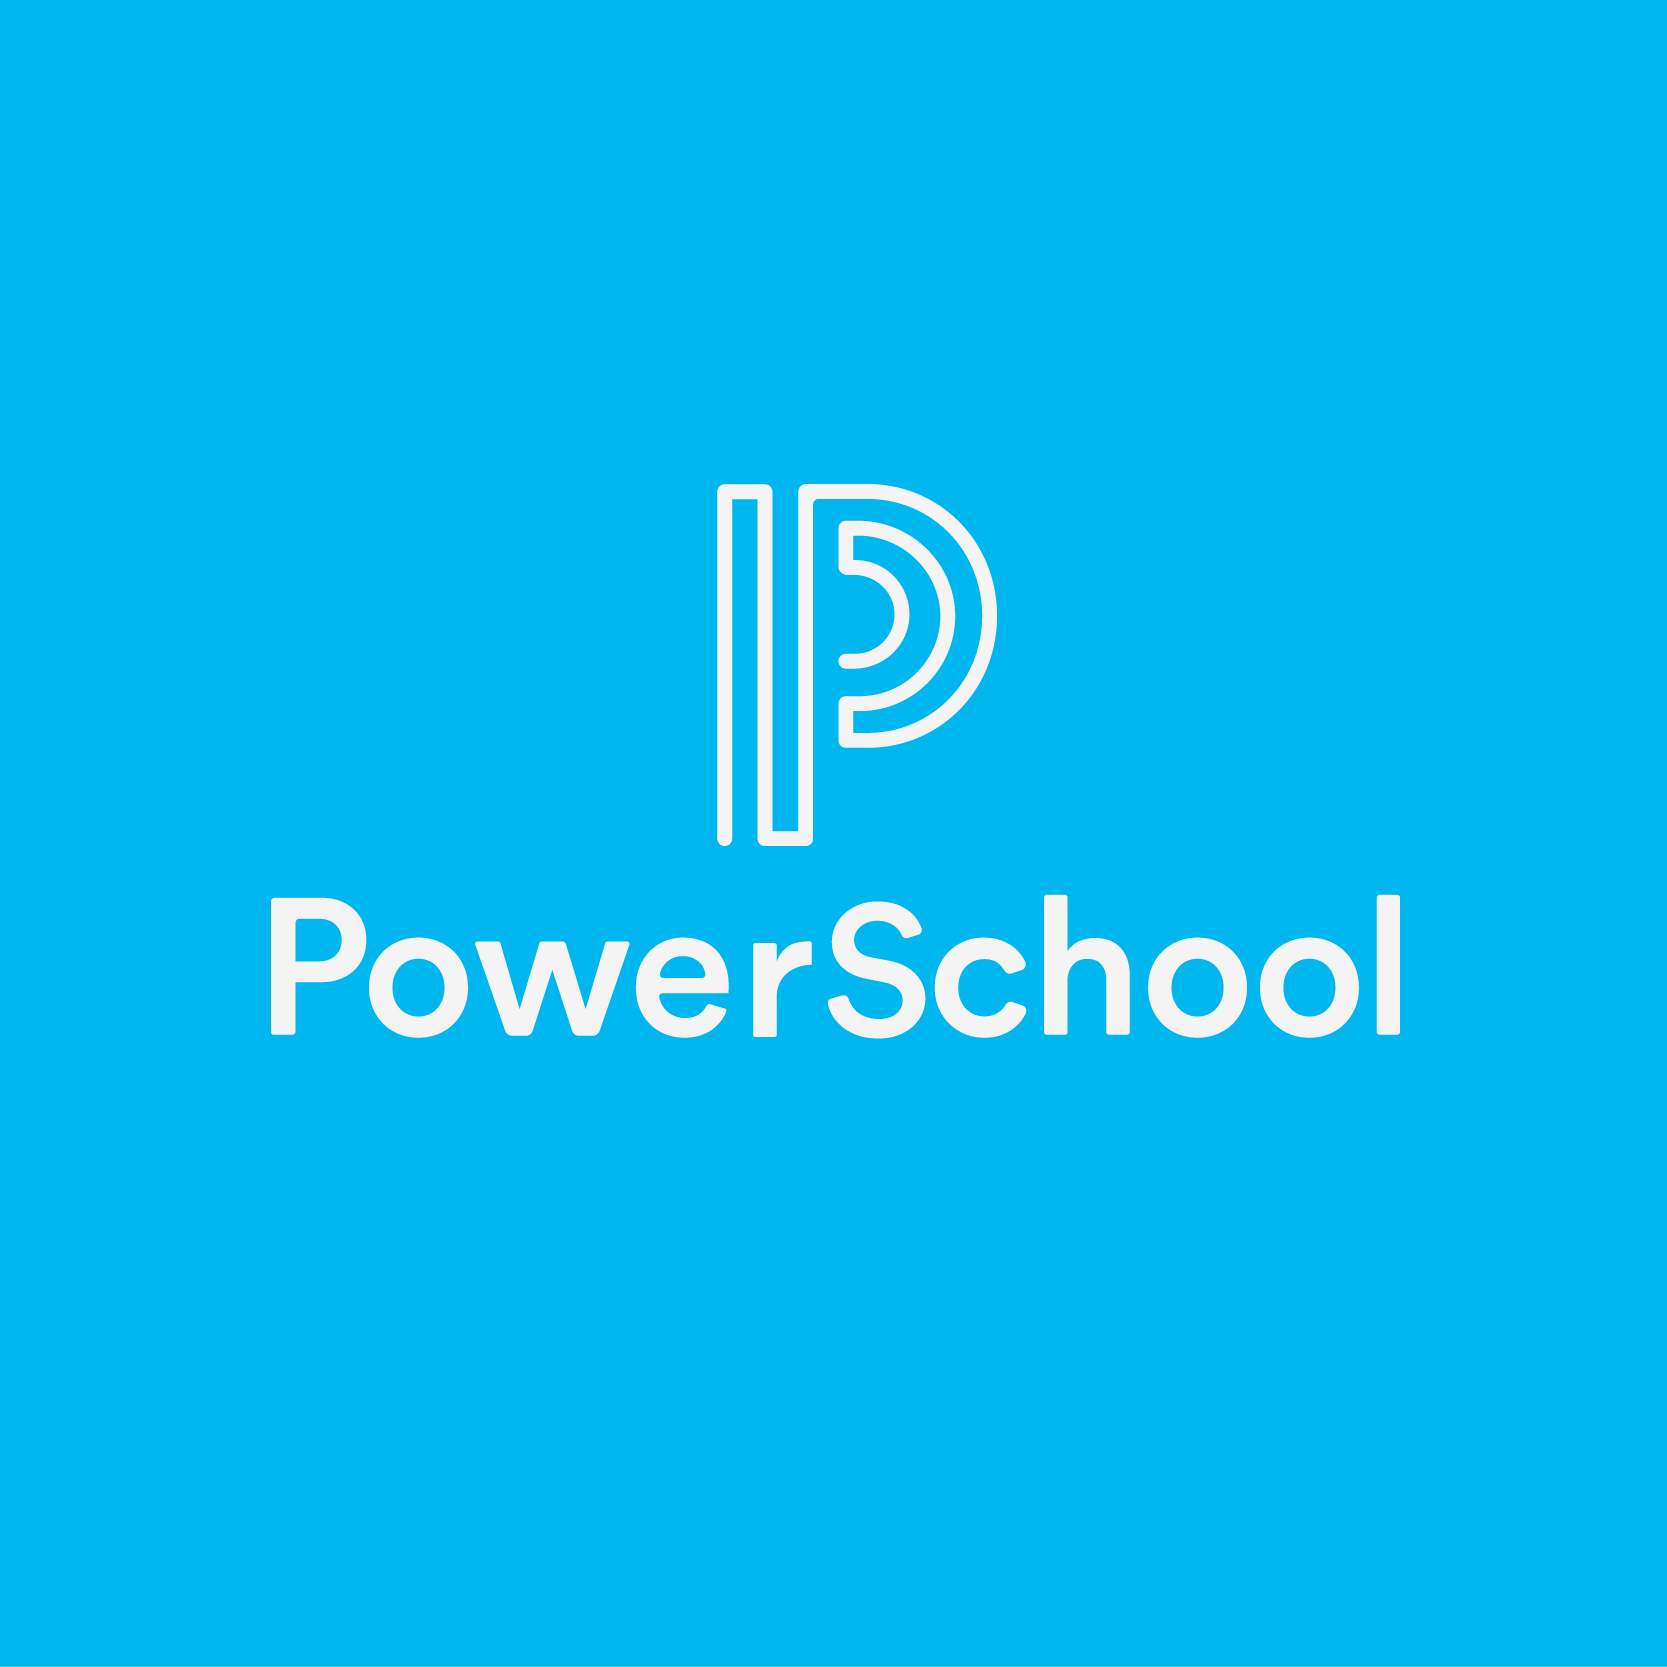 PowerSchool accélère son expansion internationale et annonce l’ouverture prévue de son premier bureau au Moyen-Orient et en Afrique